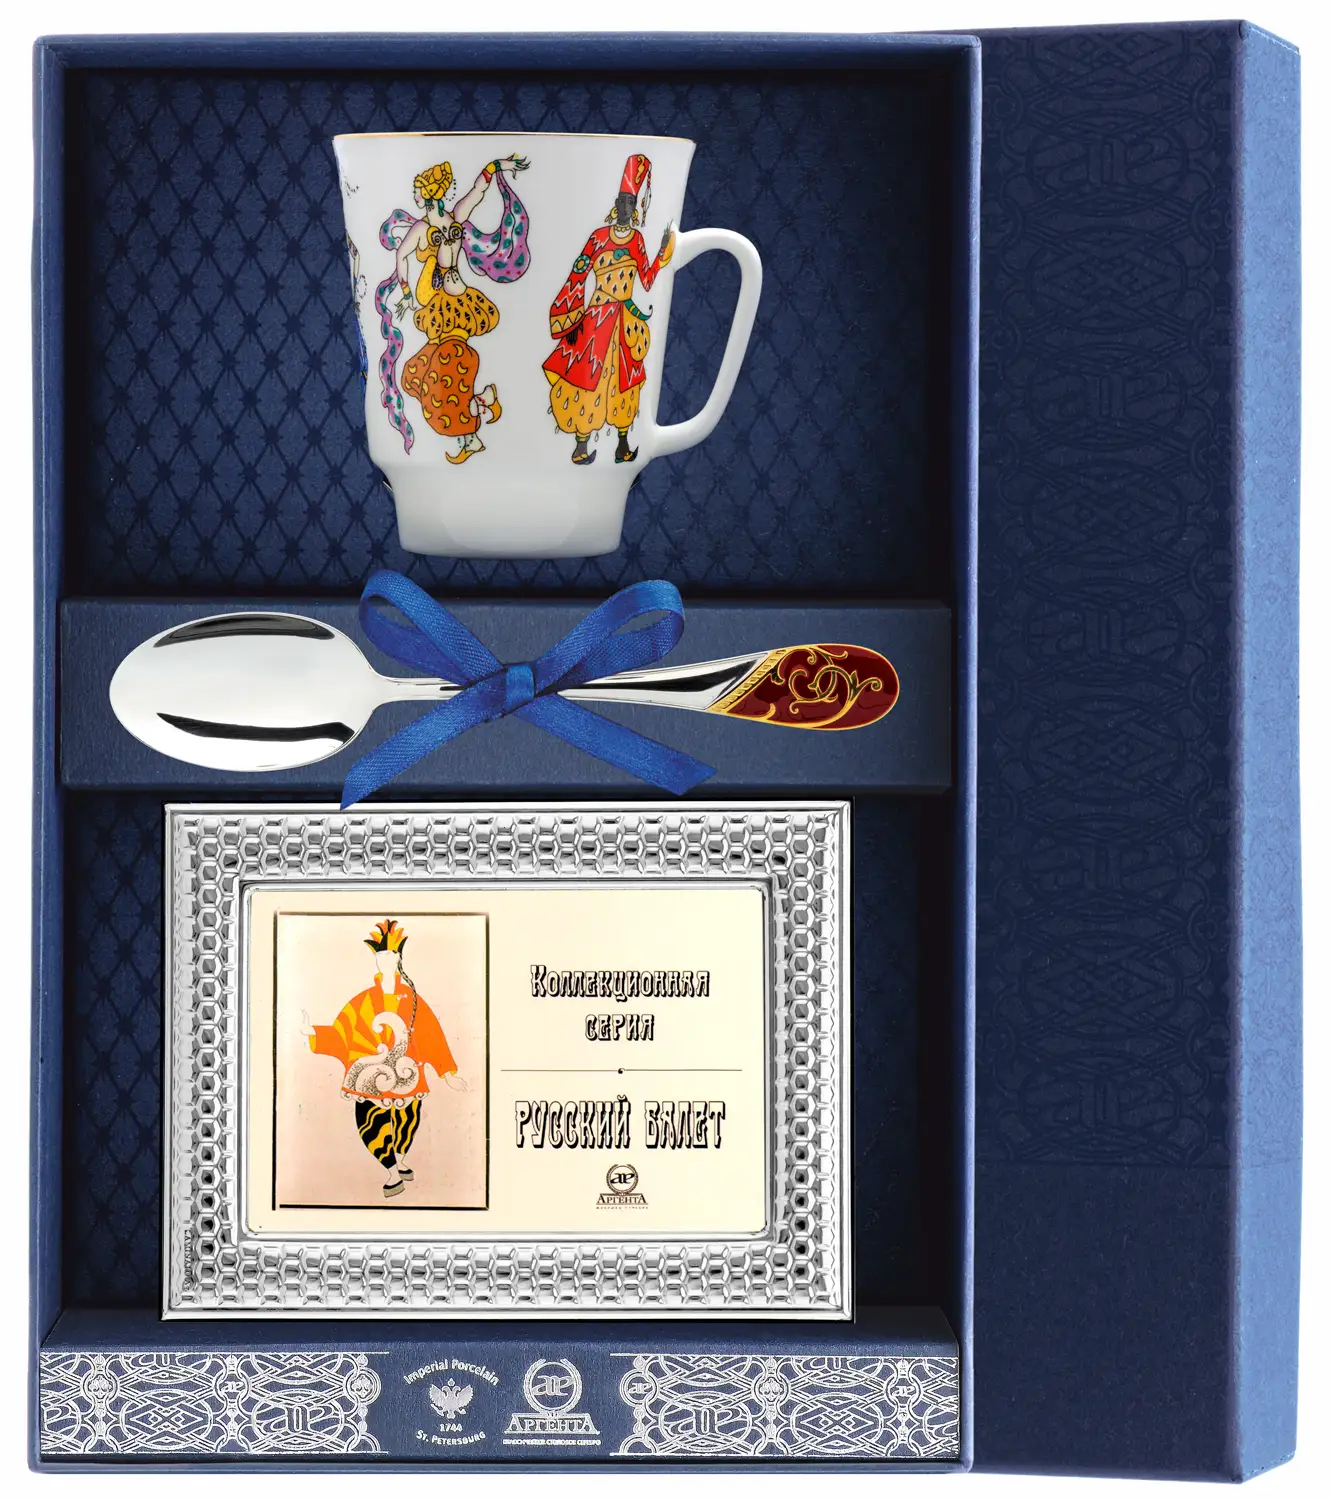 Набор чайный Майская - Балет Шахерезада: ложка, рамка для фото, чашка (Серебро 925) набор чайный майская балет лебединое озеро ложка рамка для фото чашка серебро 925